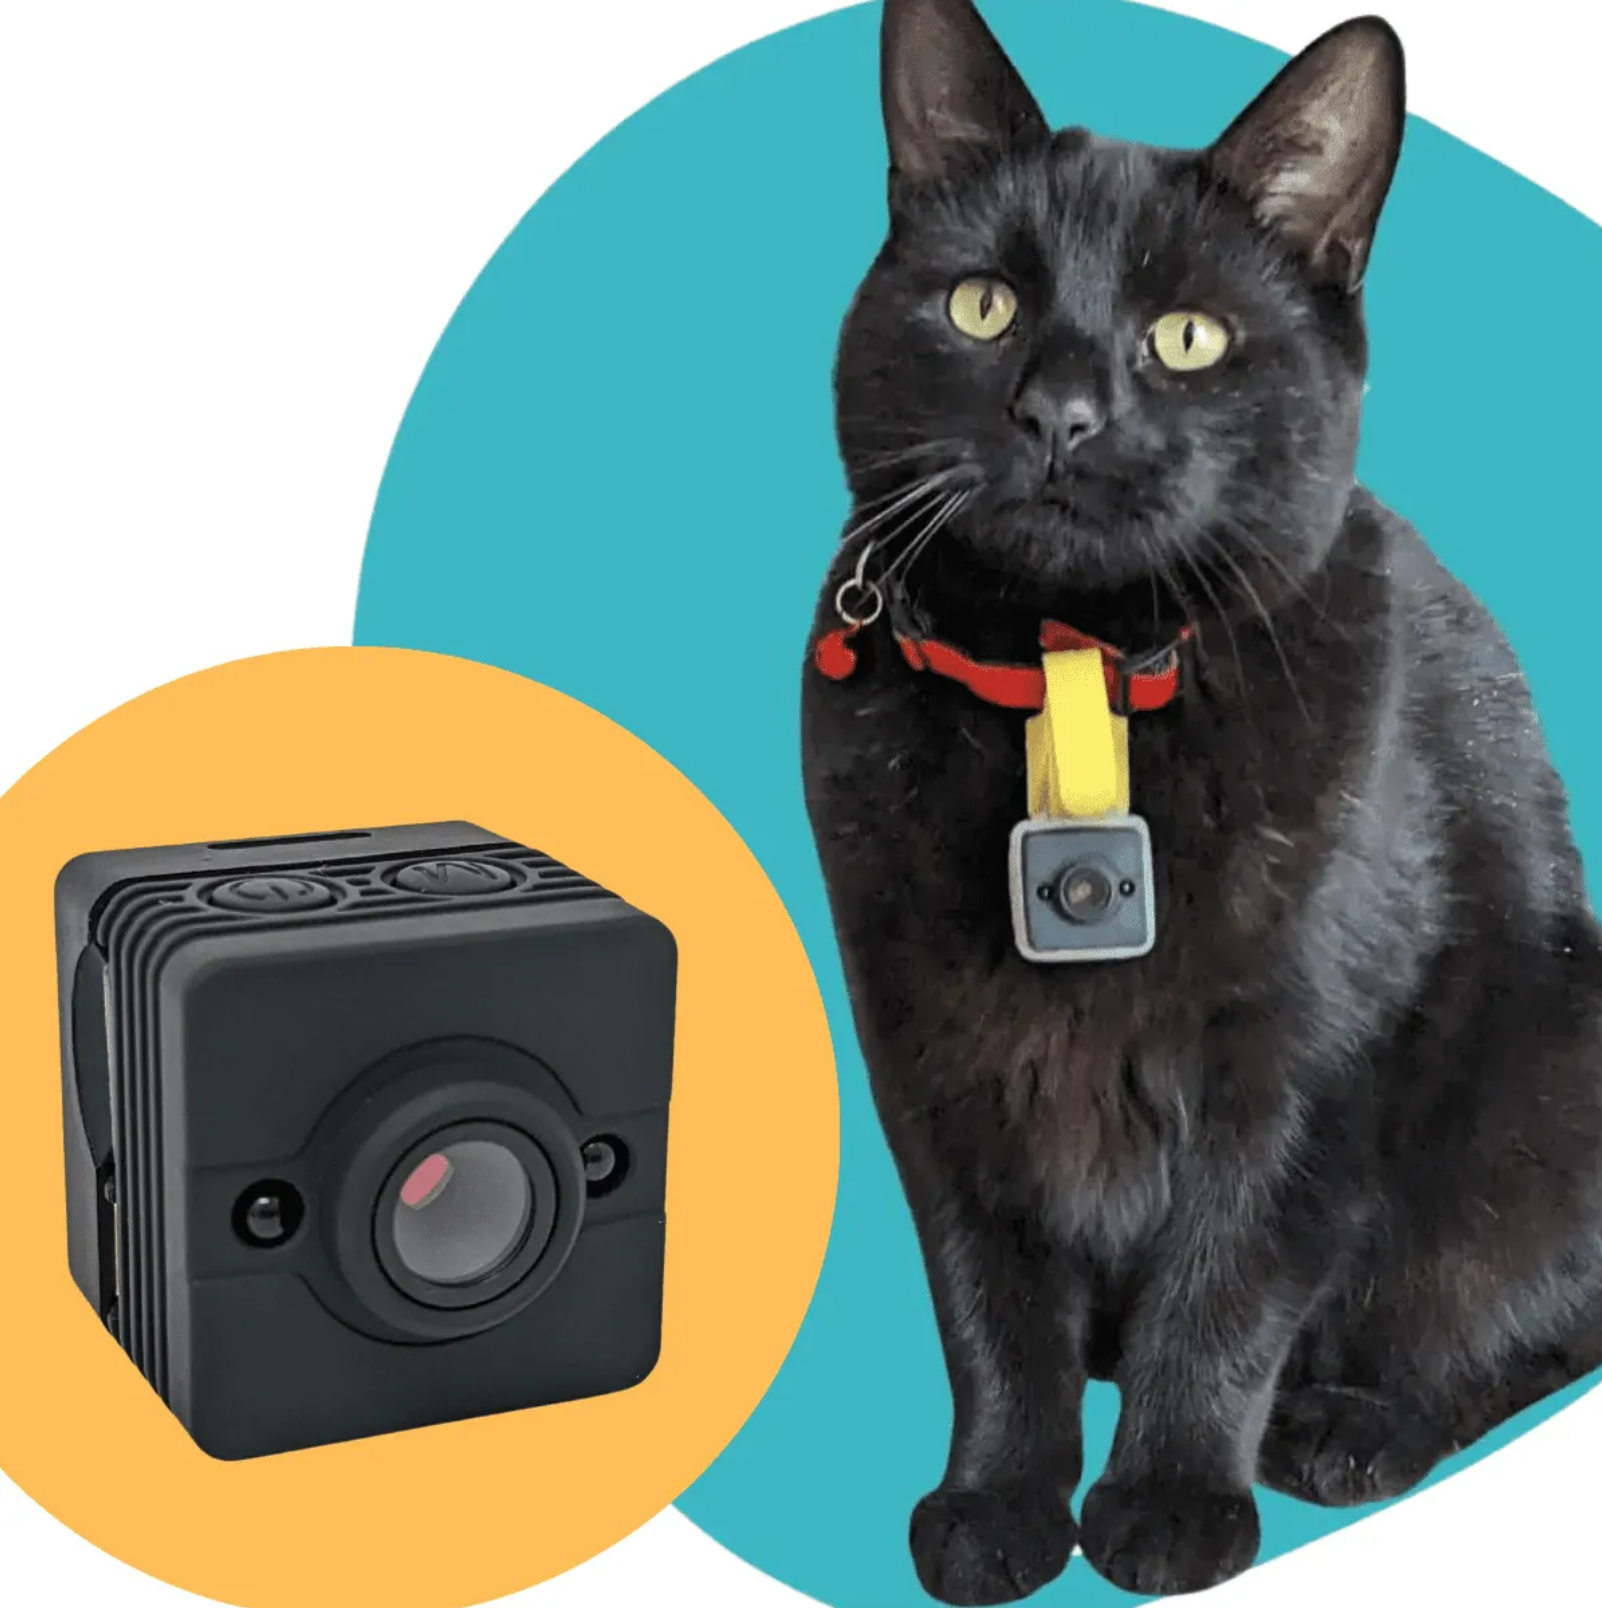 Cat Collar Camera – The CollarCam